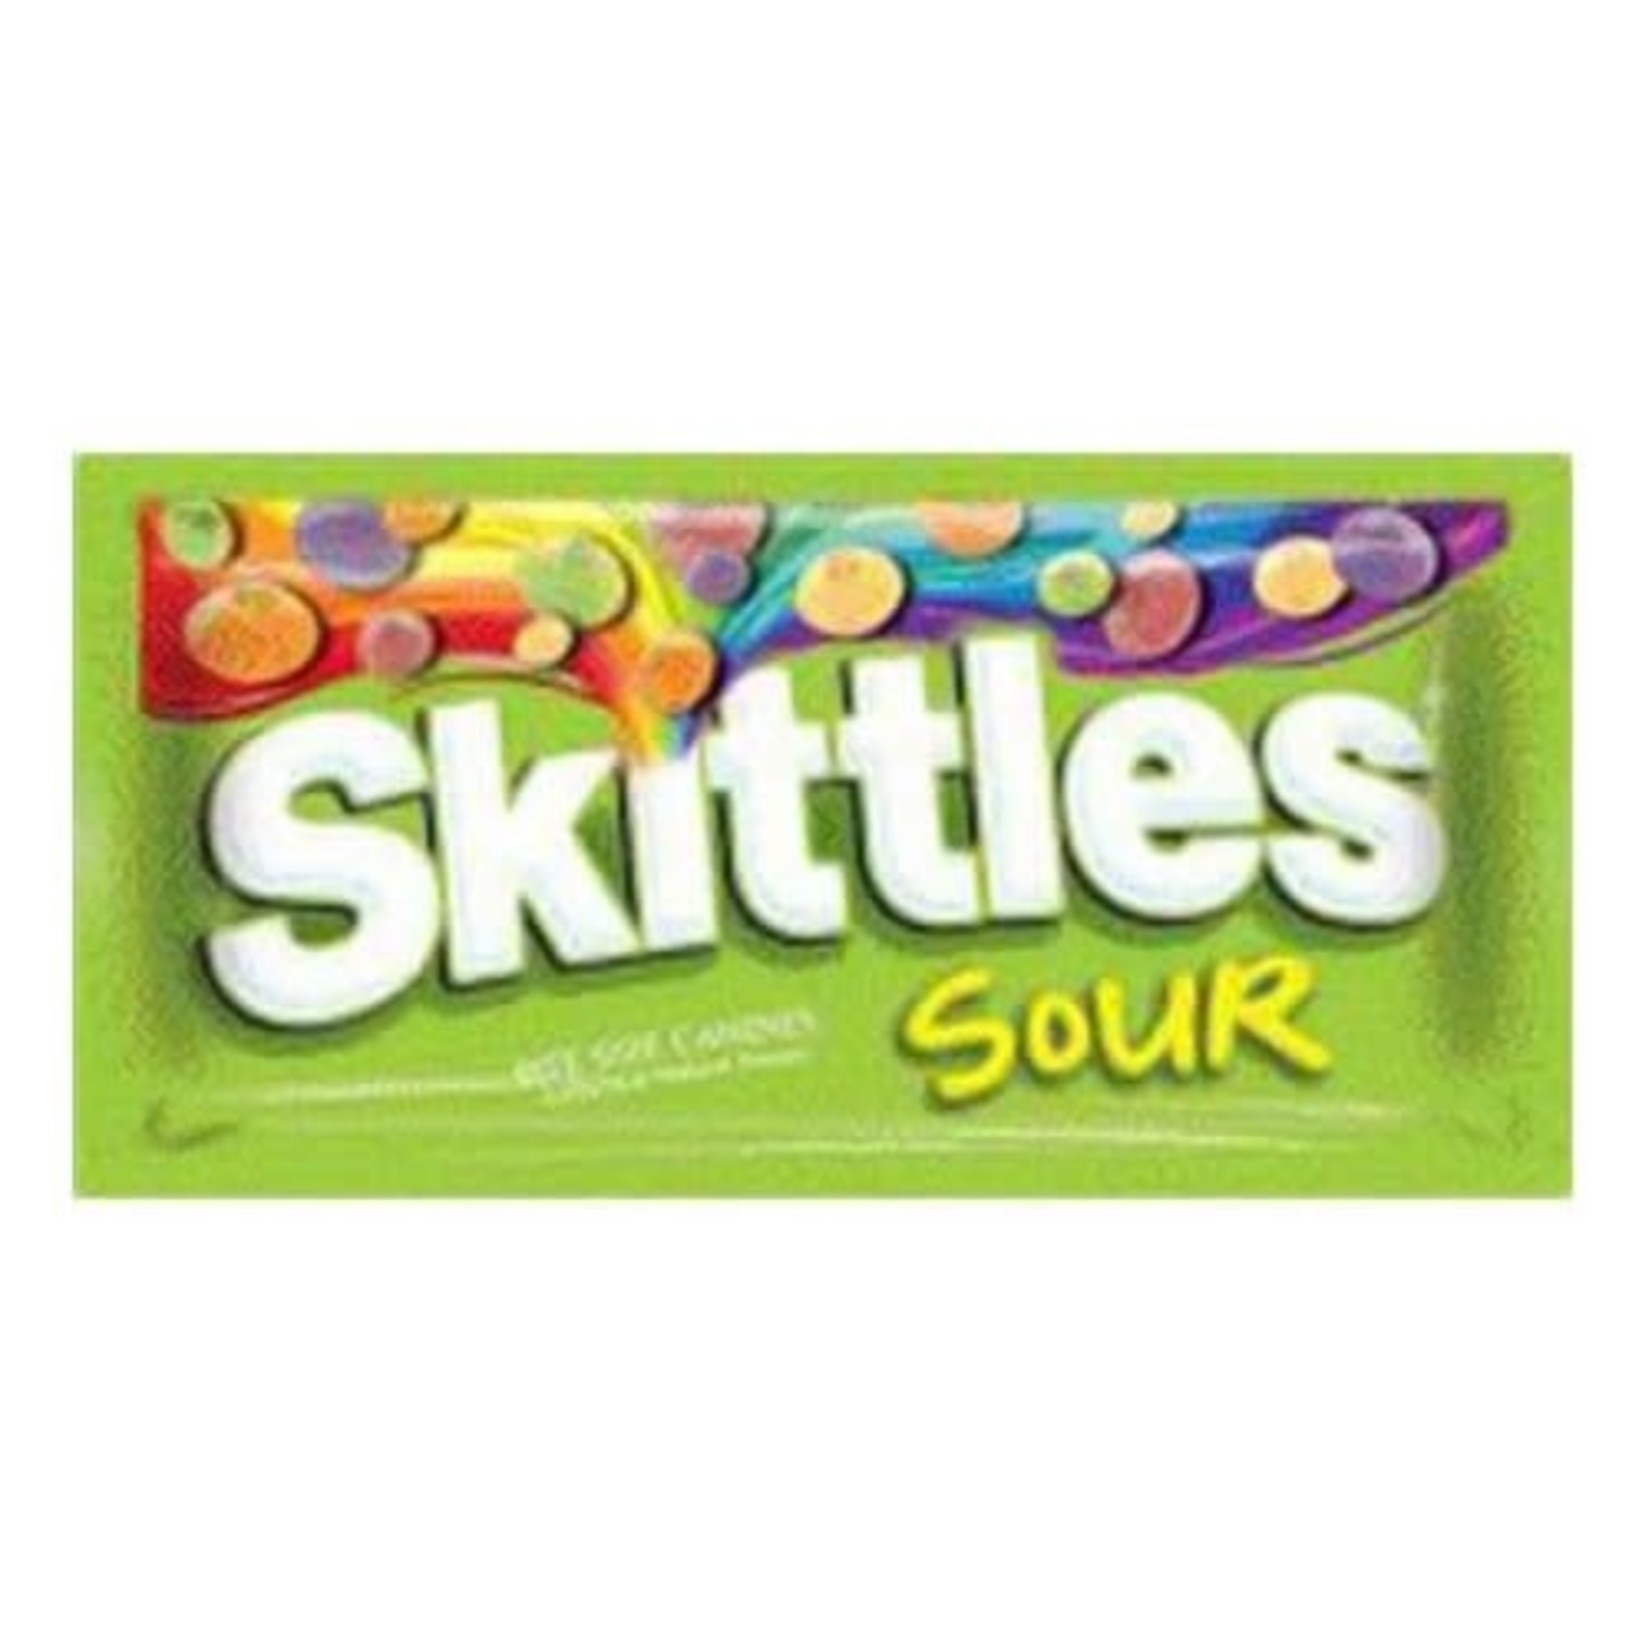 Skittles Sour Skittles Bag